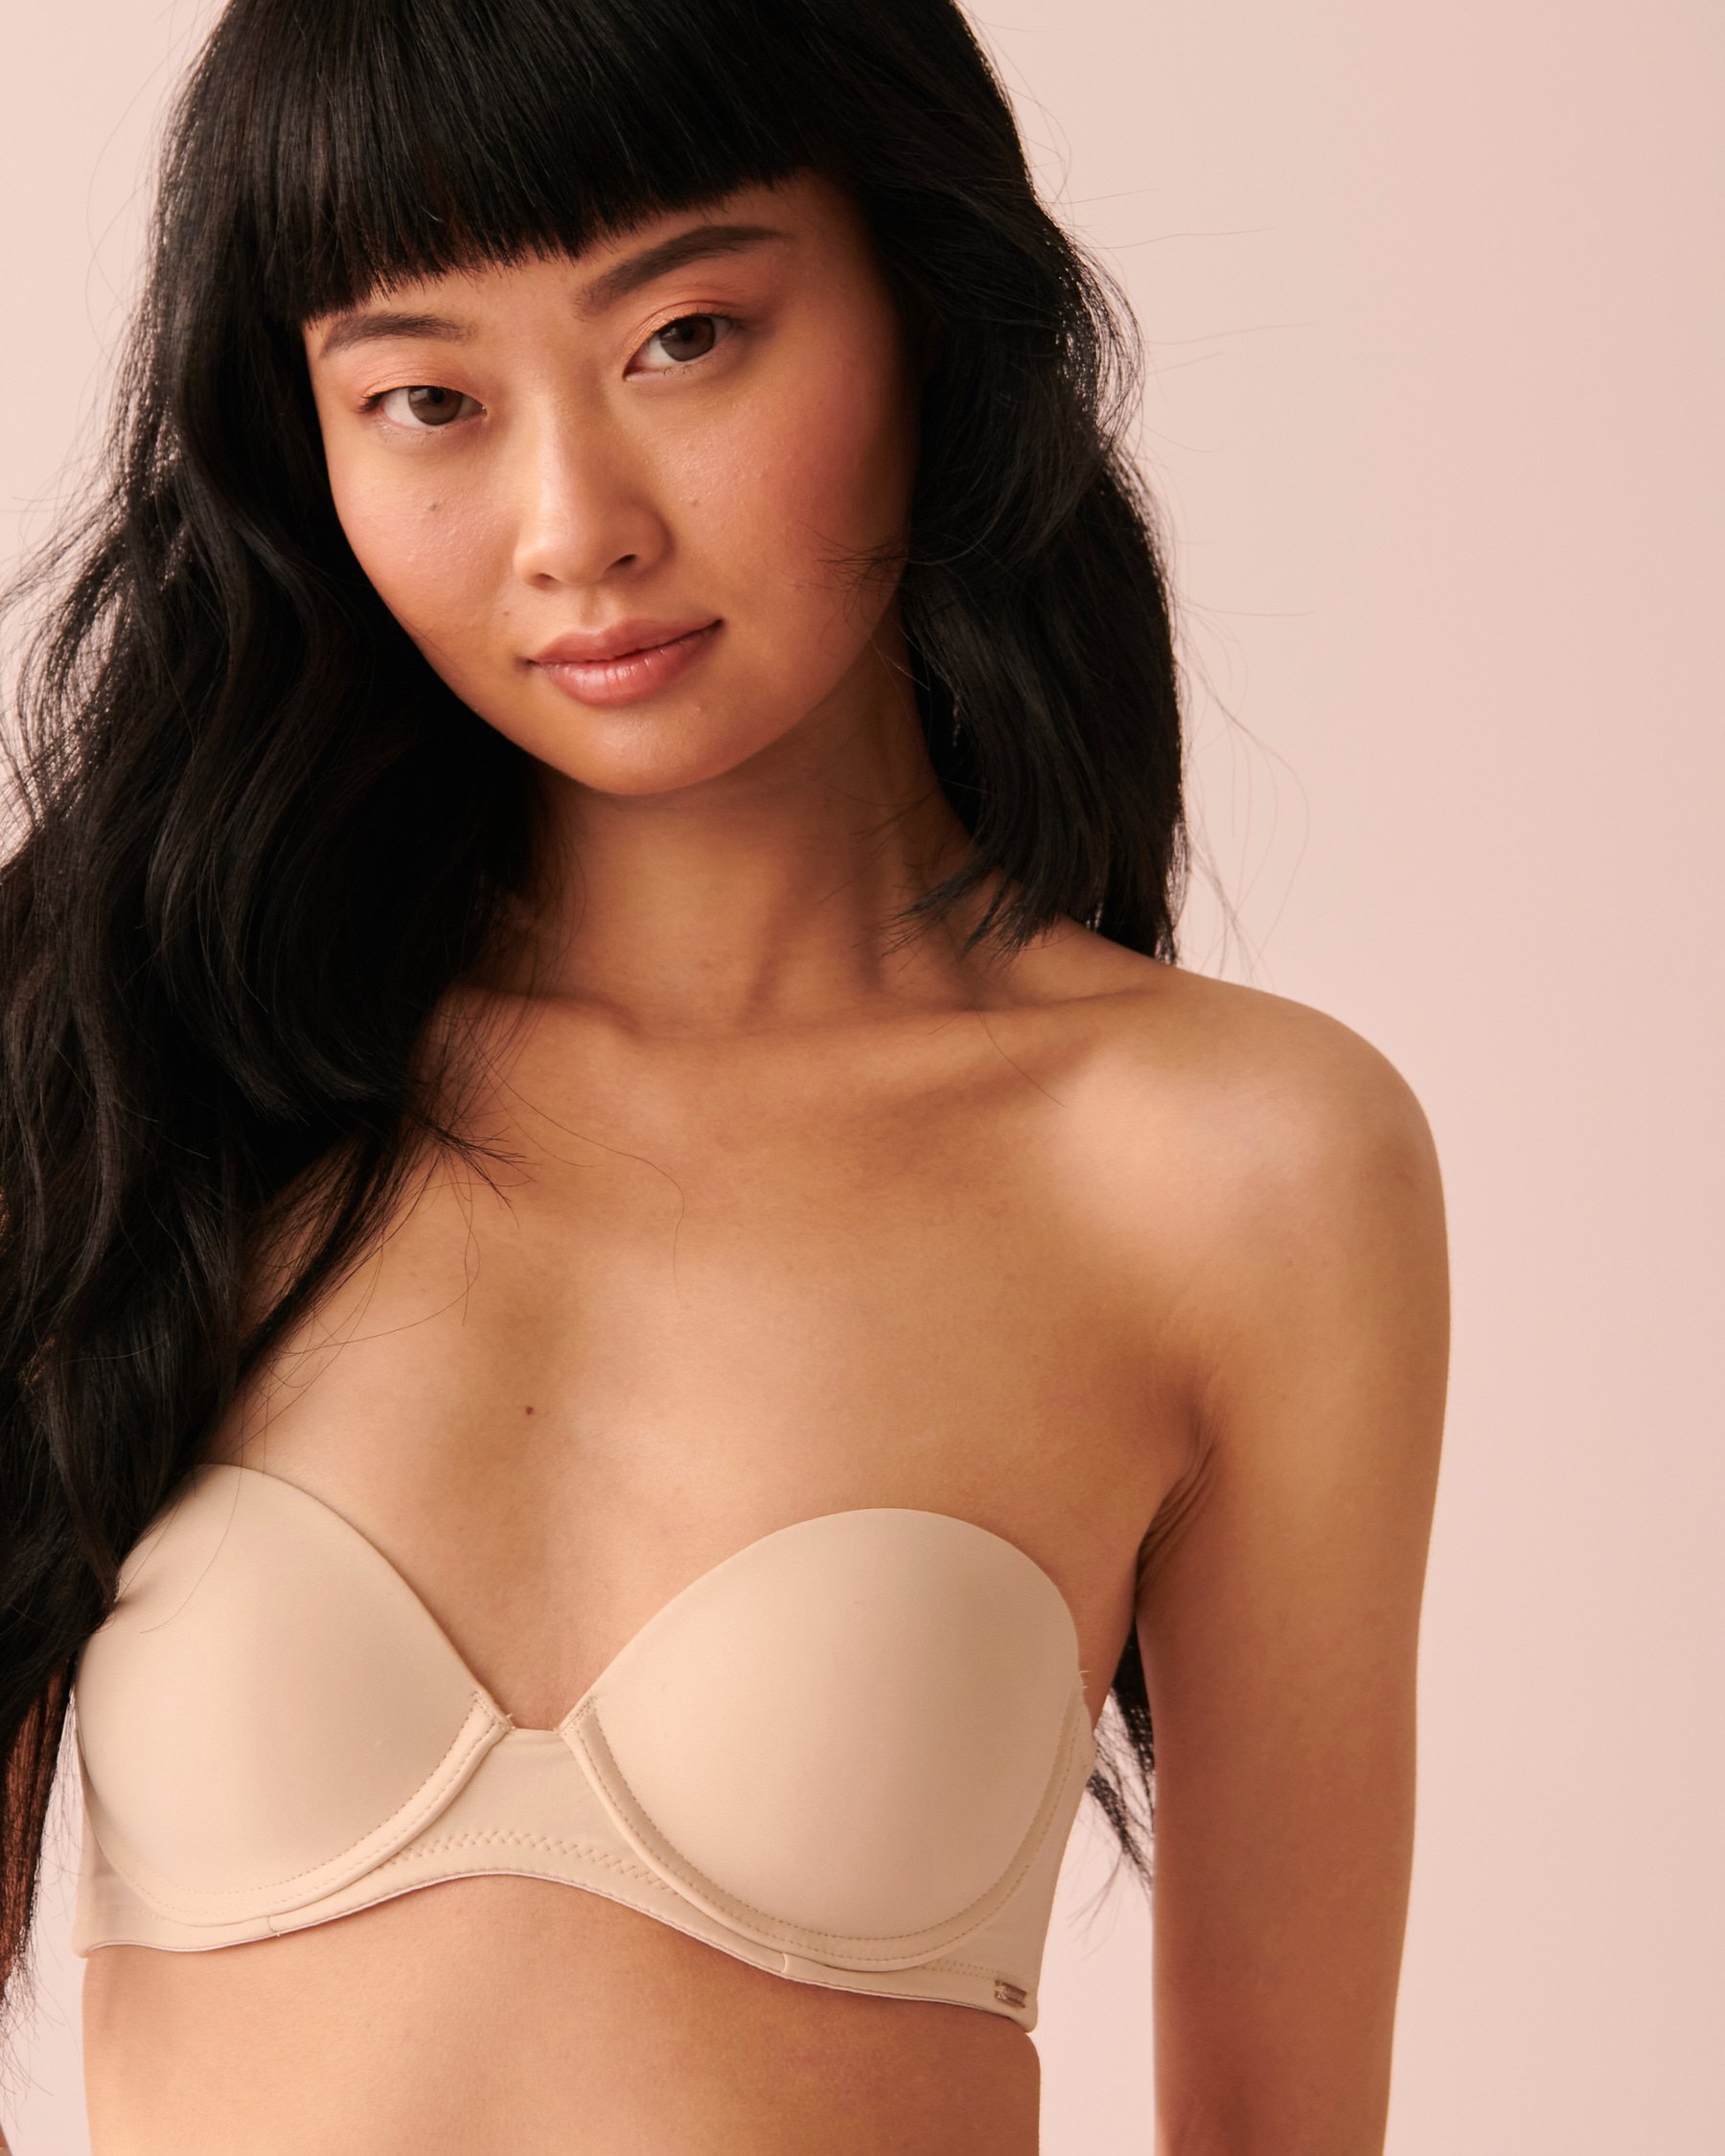 Our strapless bra saves lives! 🙌🏼 #bigbustbrands #brasandbriefs